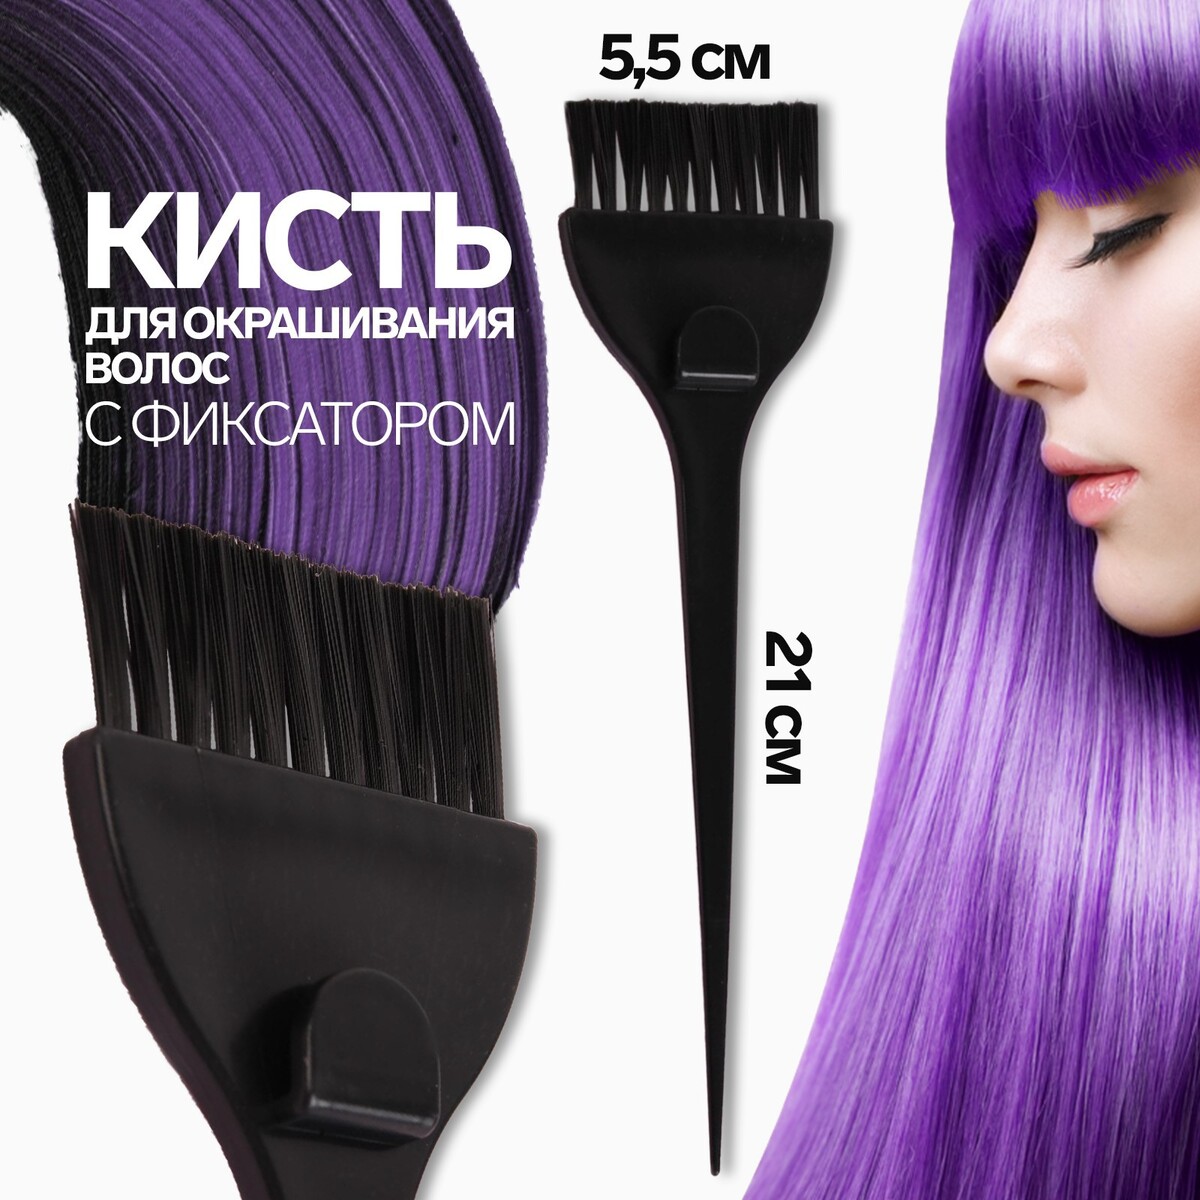 Кисть для окрашивания волос с фиксатором, 21 х 5,5 см, цвет черный кисть для окрашивания волос широкая 21 х 6 см